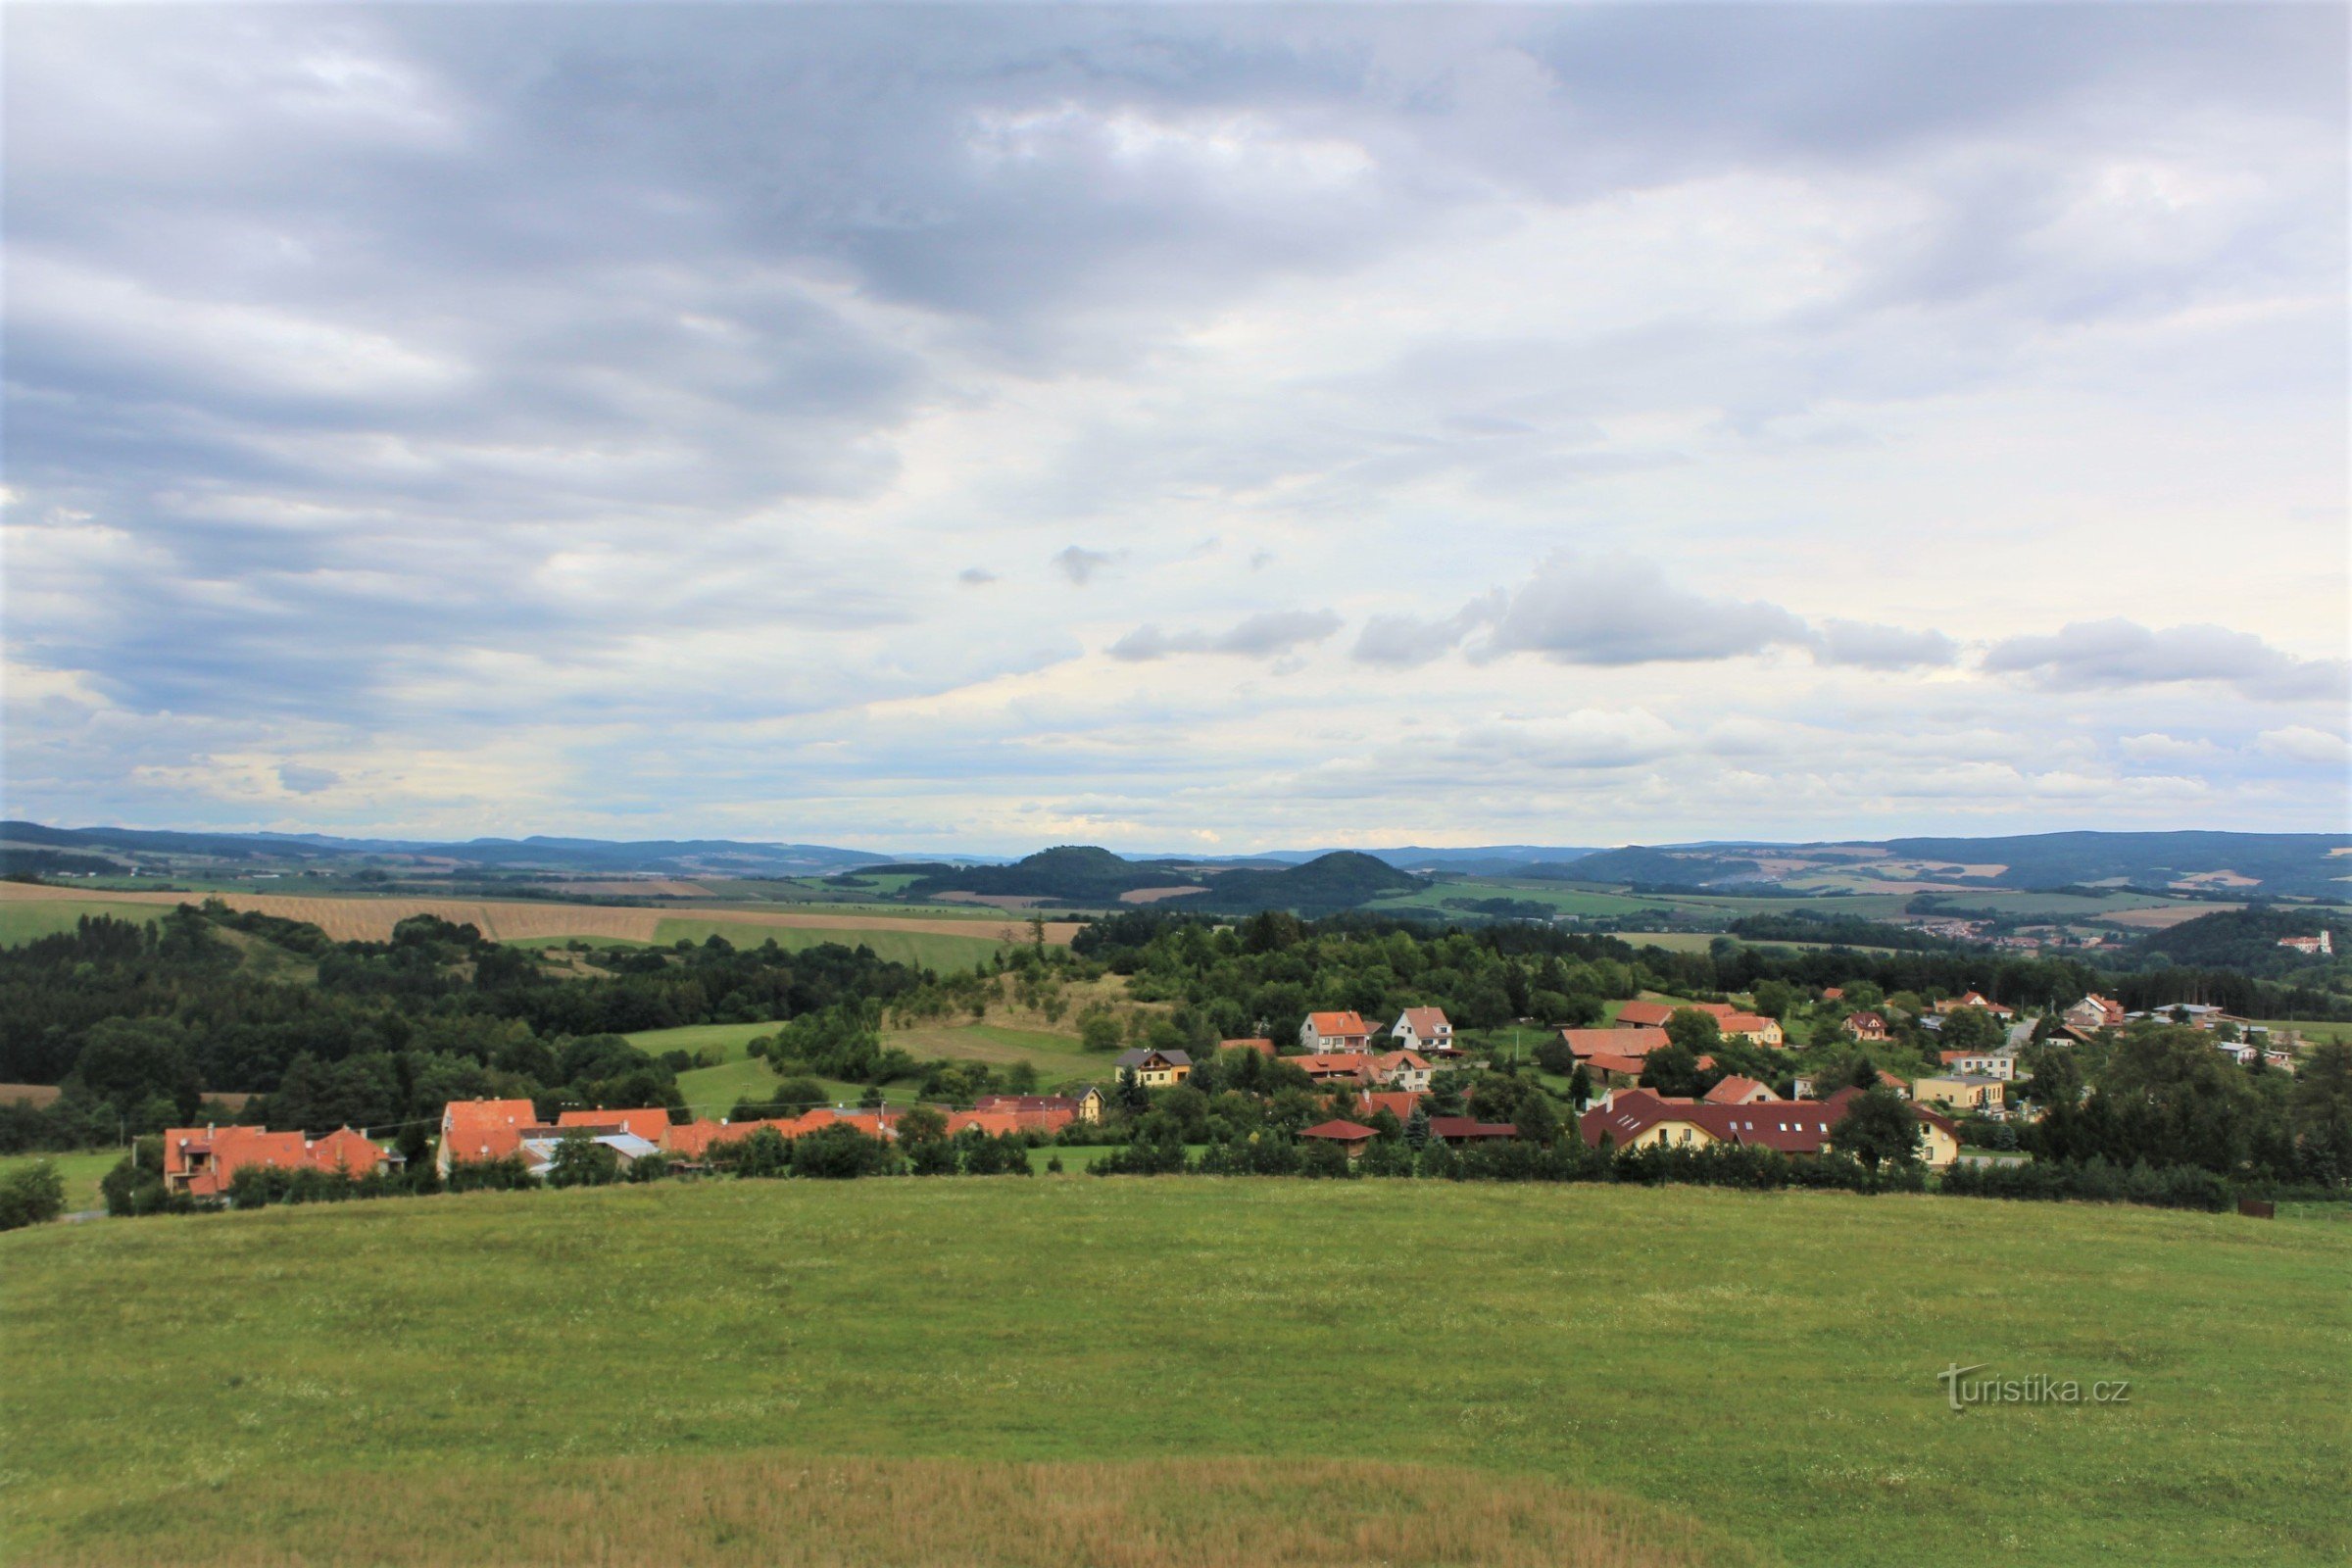 Η θέα από τον πύργο παρατήρησης προς το Boskovická brázda μέχρι το Malý και το Velký Chlum